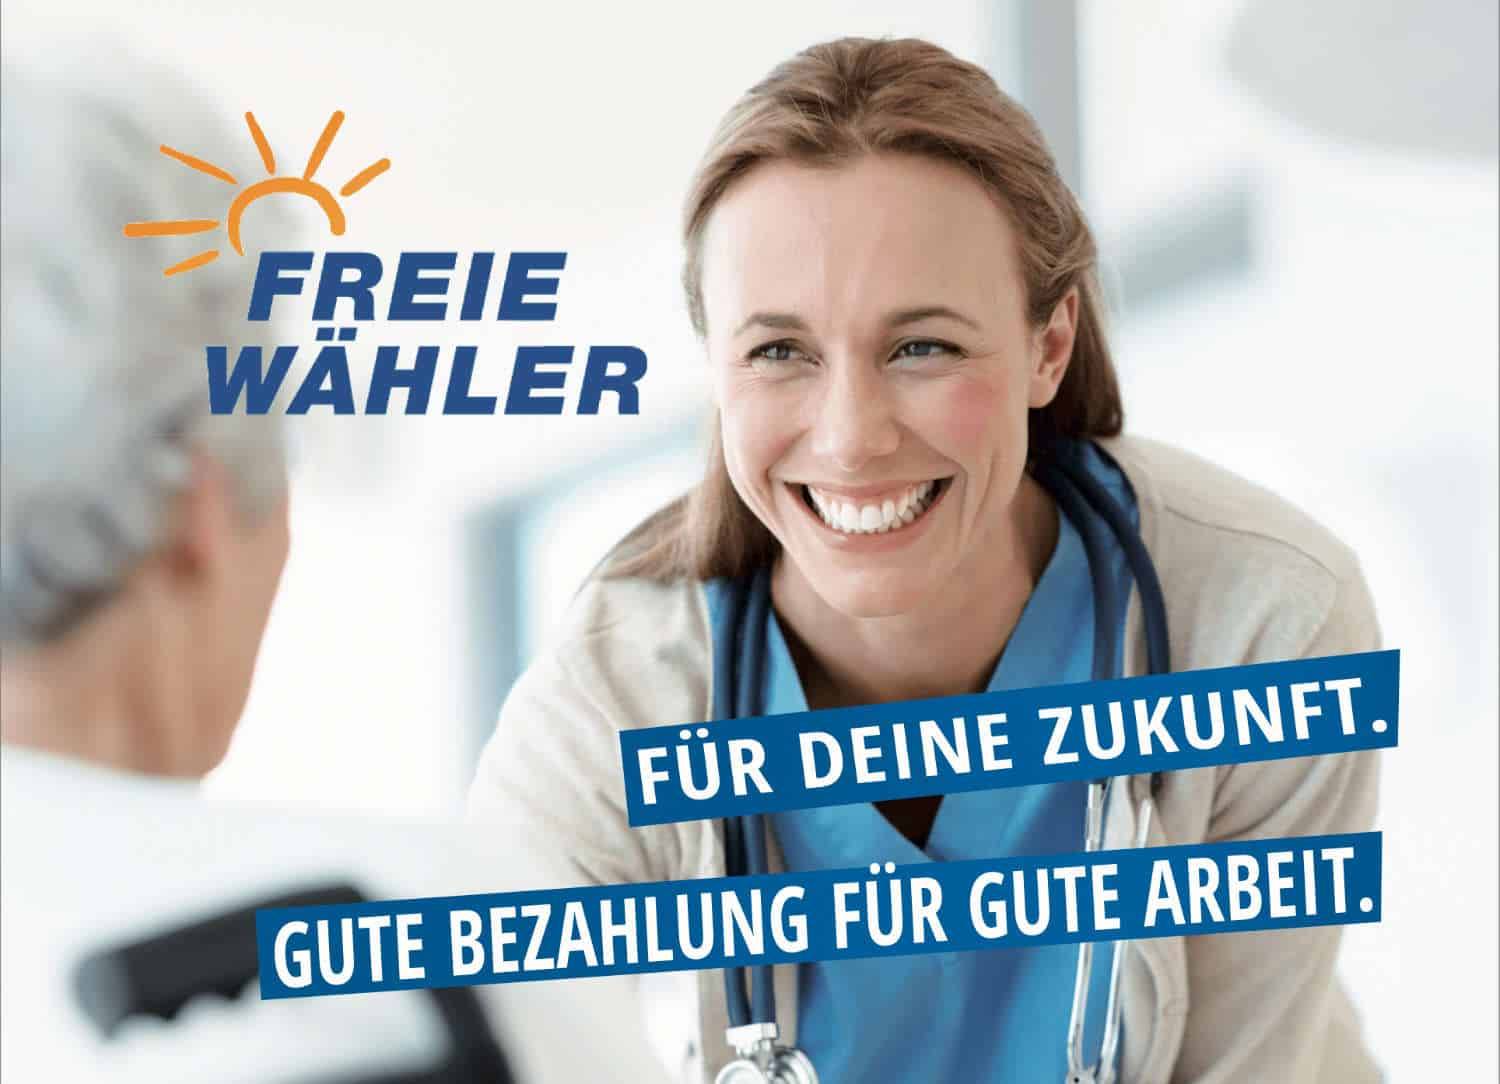 Ärtztin auf Bild mit Logo der Freien Wähler und Slogan: Für deine Zukunft - Gute Bezahlung für gutre Arbeit